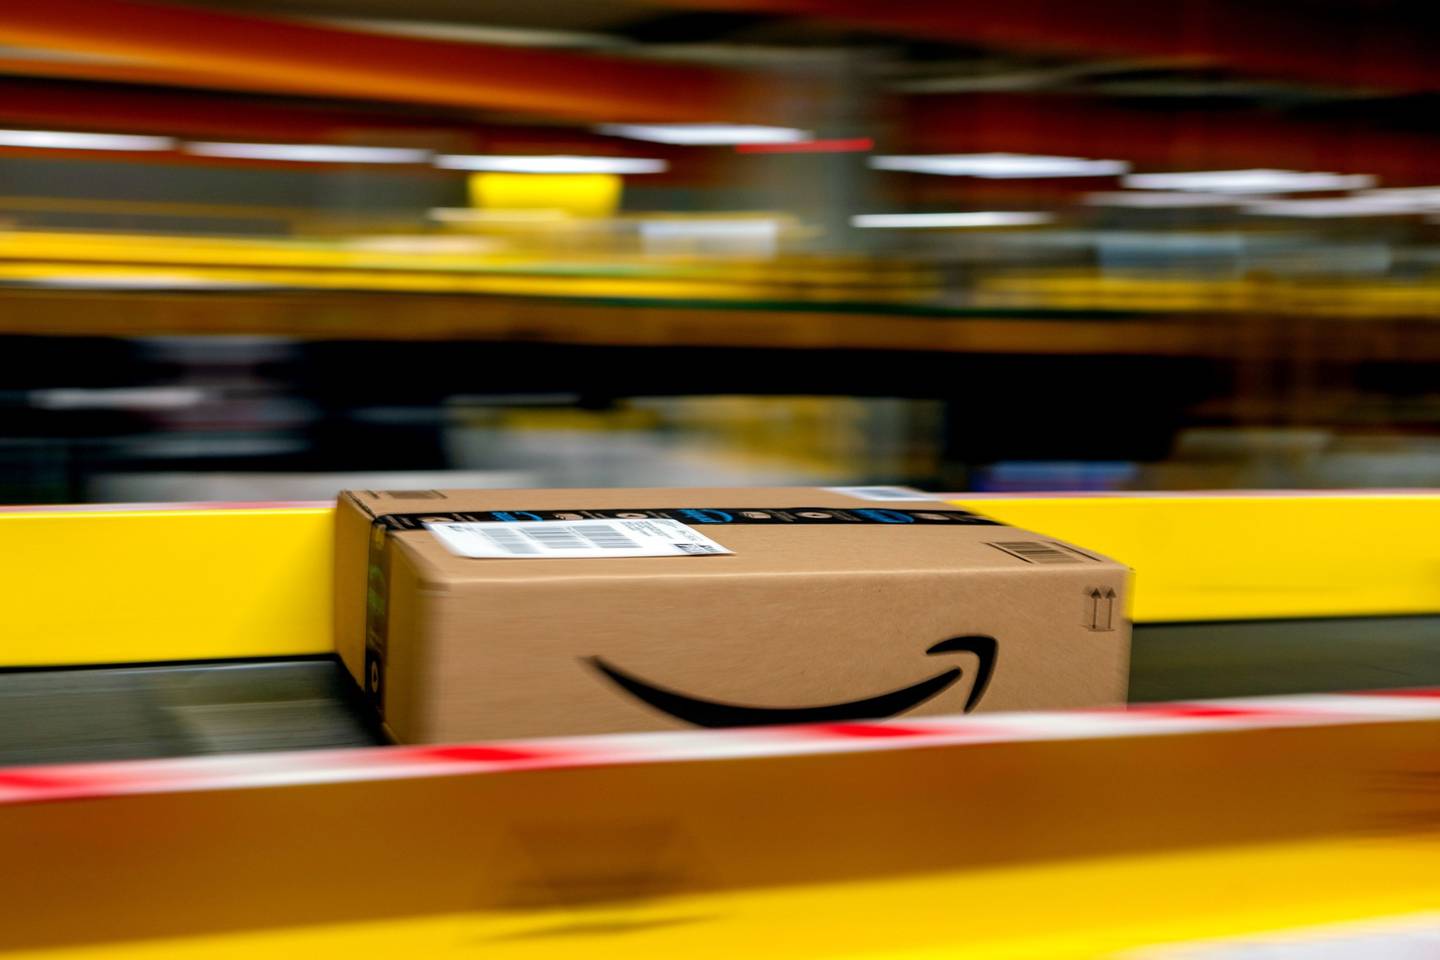 Un paquete de Amazon Prime pasa por una cinta transportadora en un centro de cumplimiento de Amazon.com Inc. en Frankenthal, Alemania, el martes 13 de octubre de 2020.